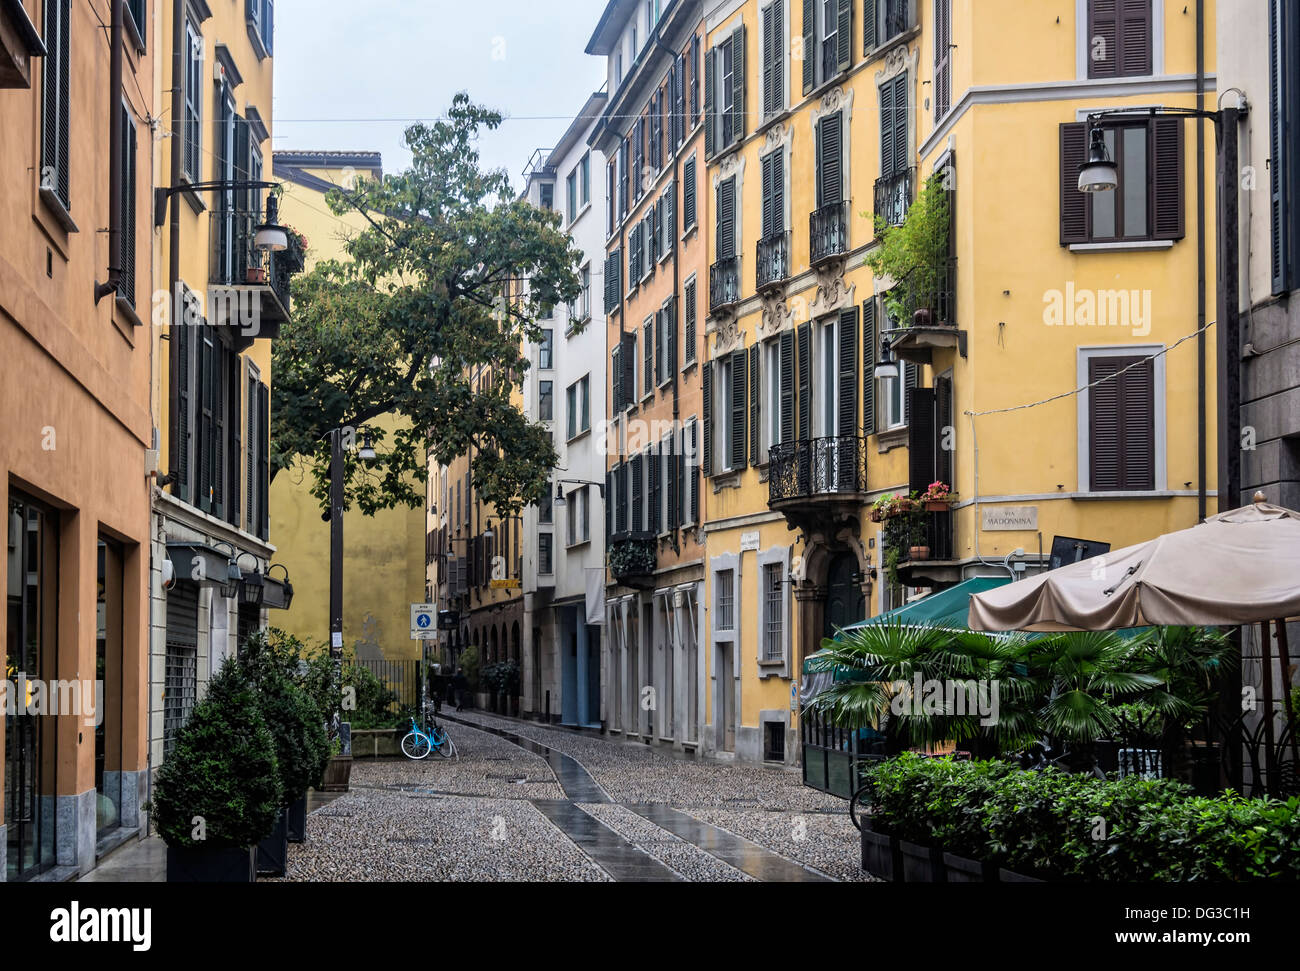 Street scene in the older part of Milano Stock Photo